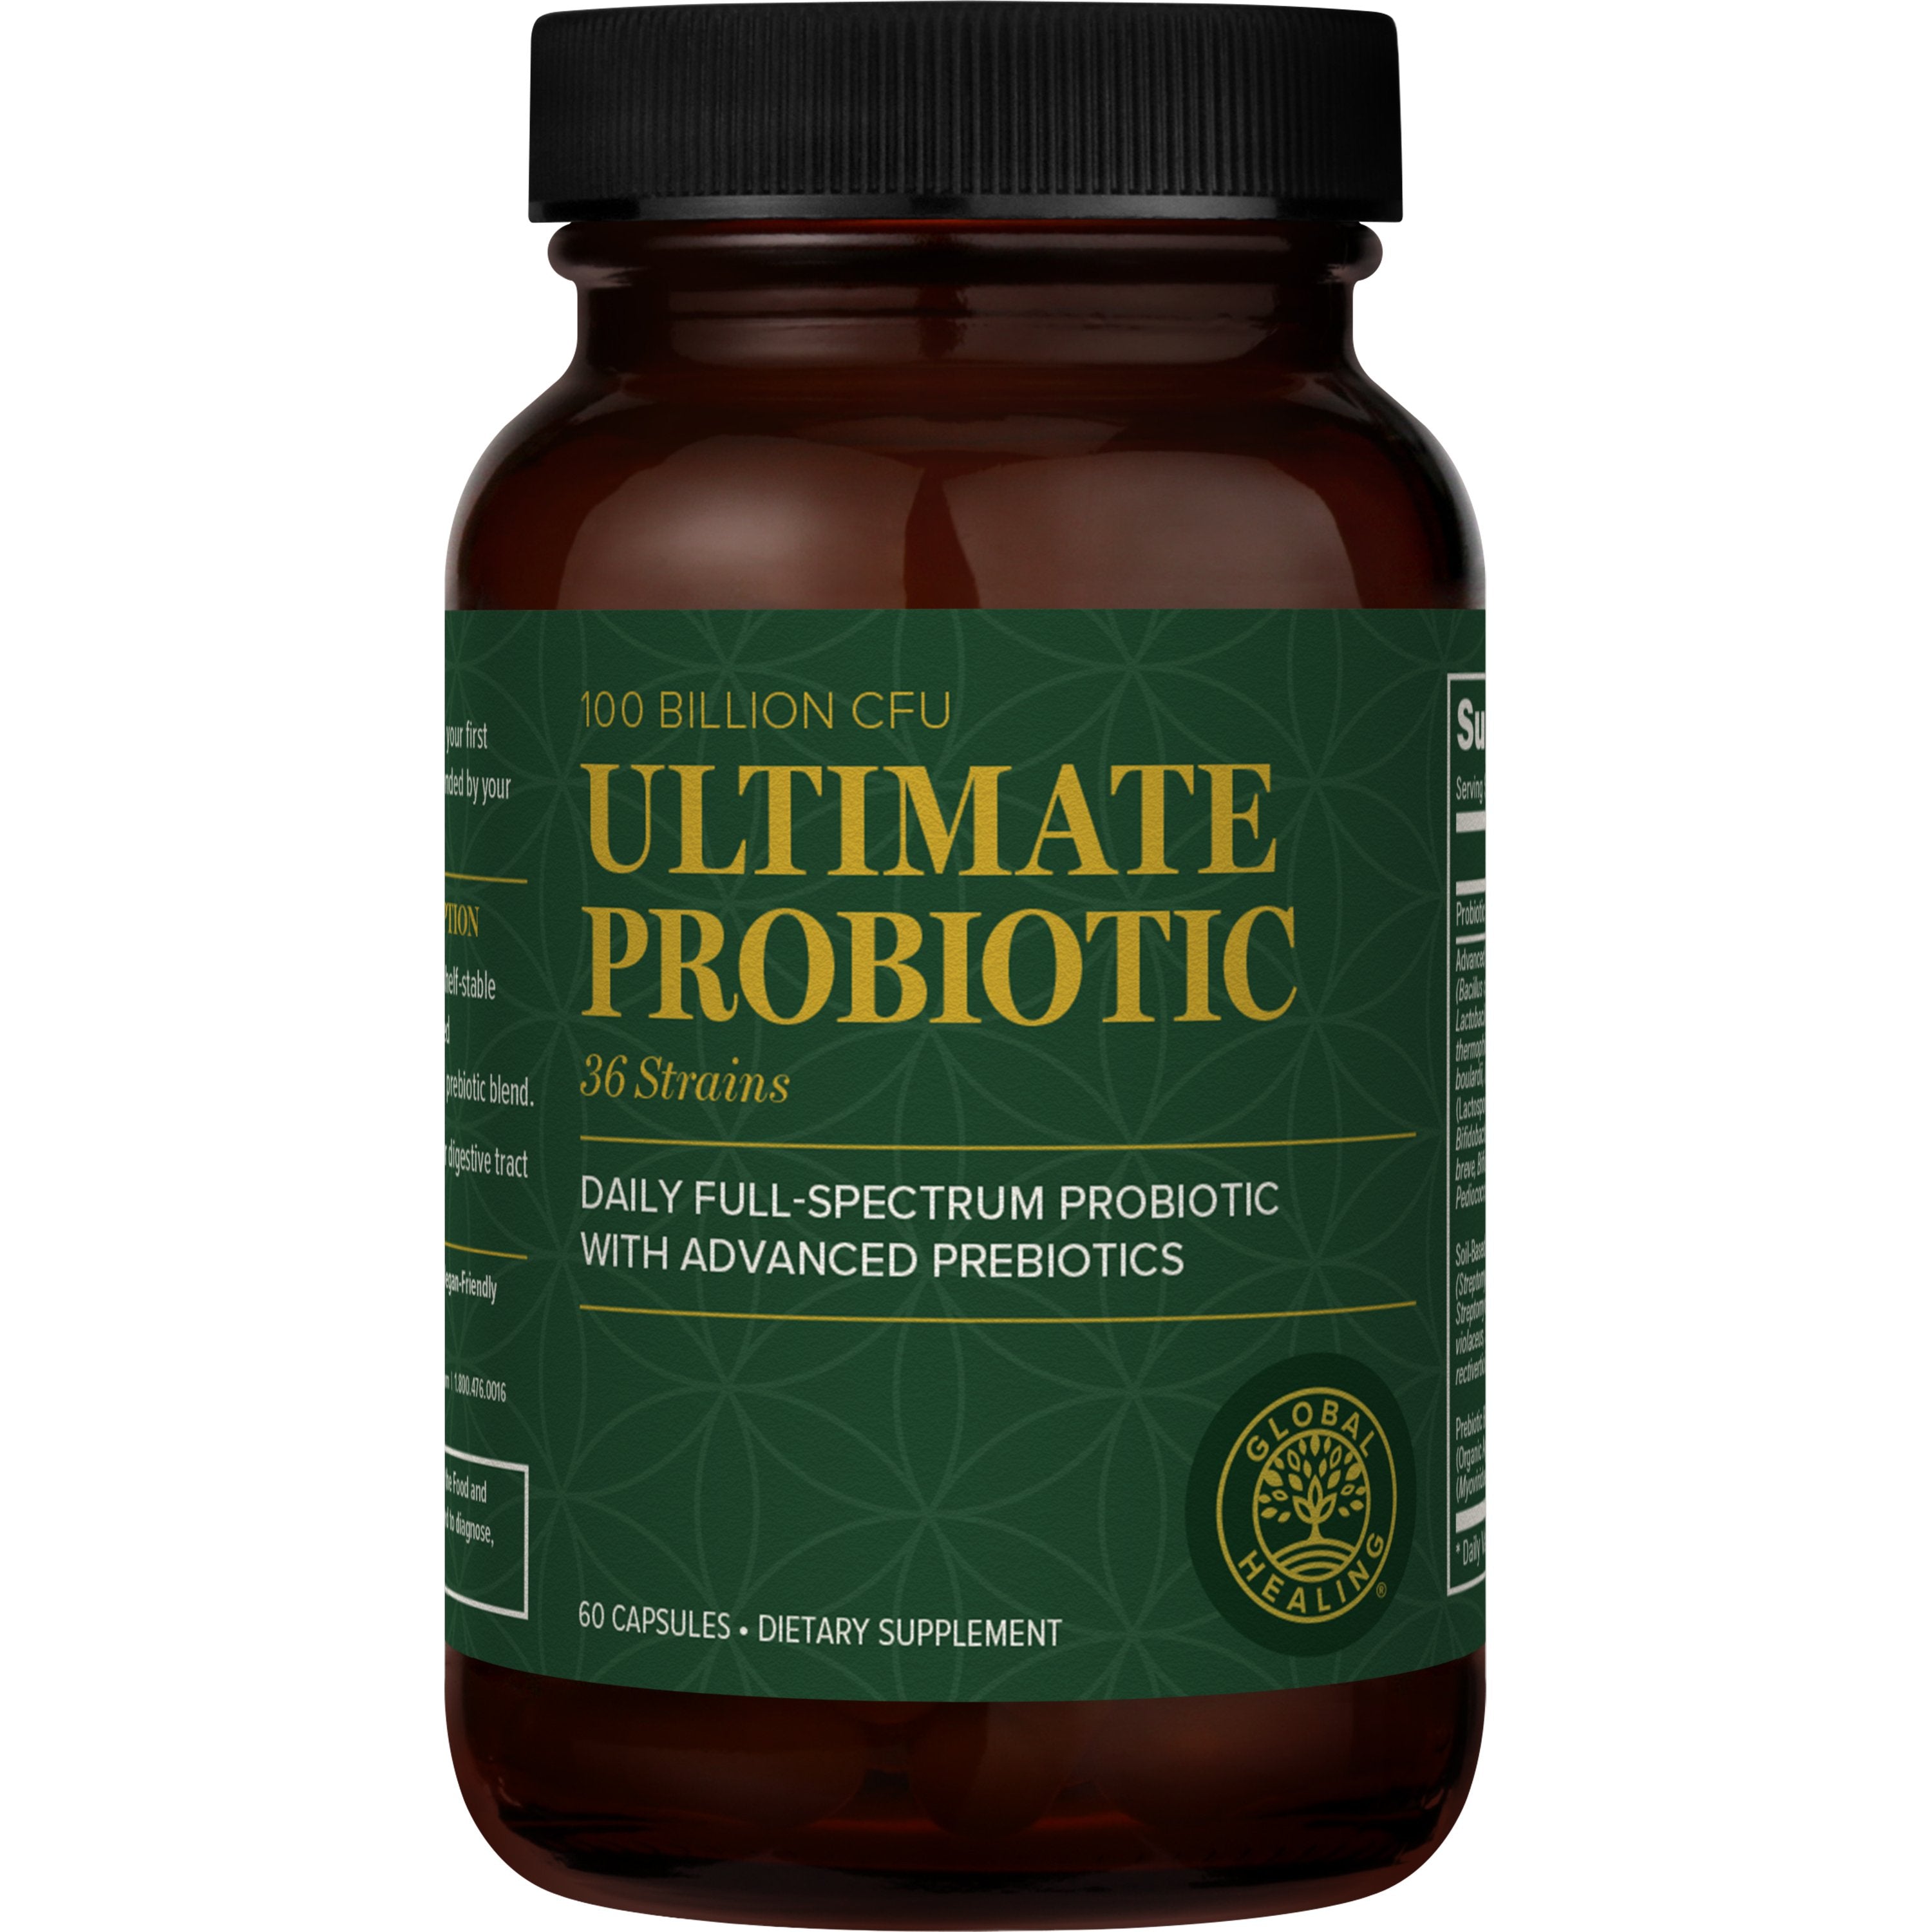 Global Healing Ultimate Probiotic - 100 Billion CFU Daily Probiotic & Prebiotic - 60 capsules.